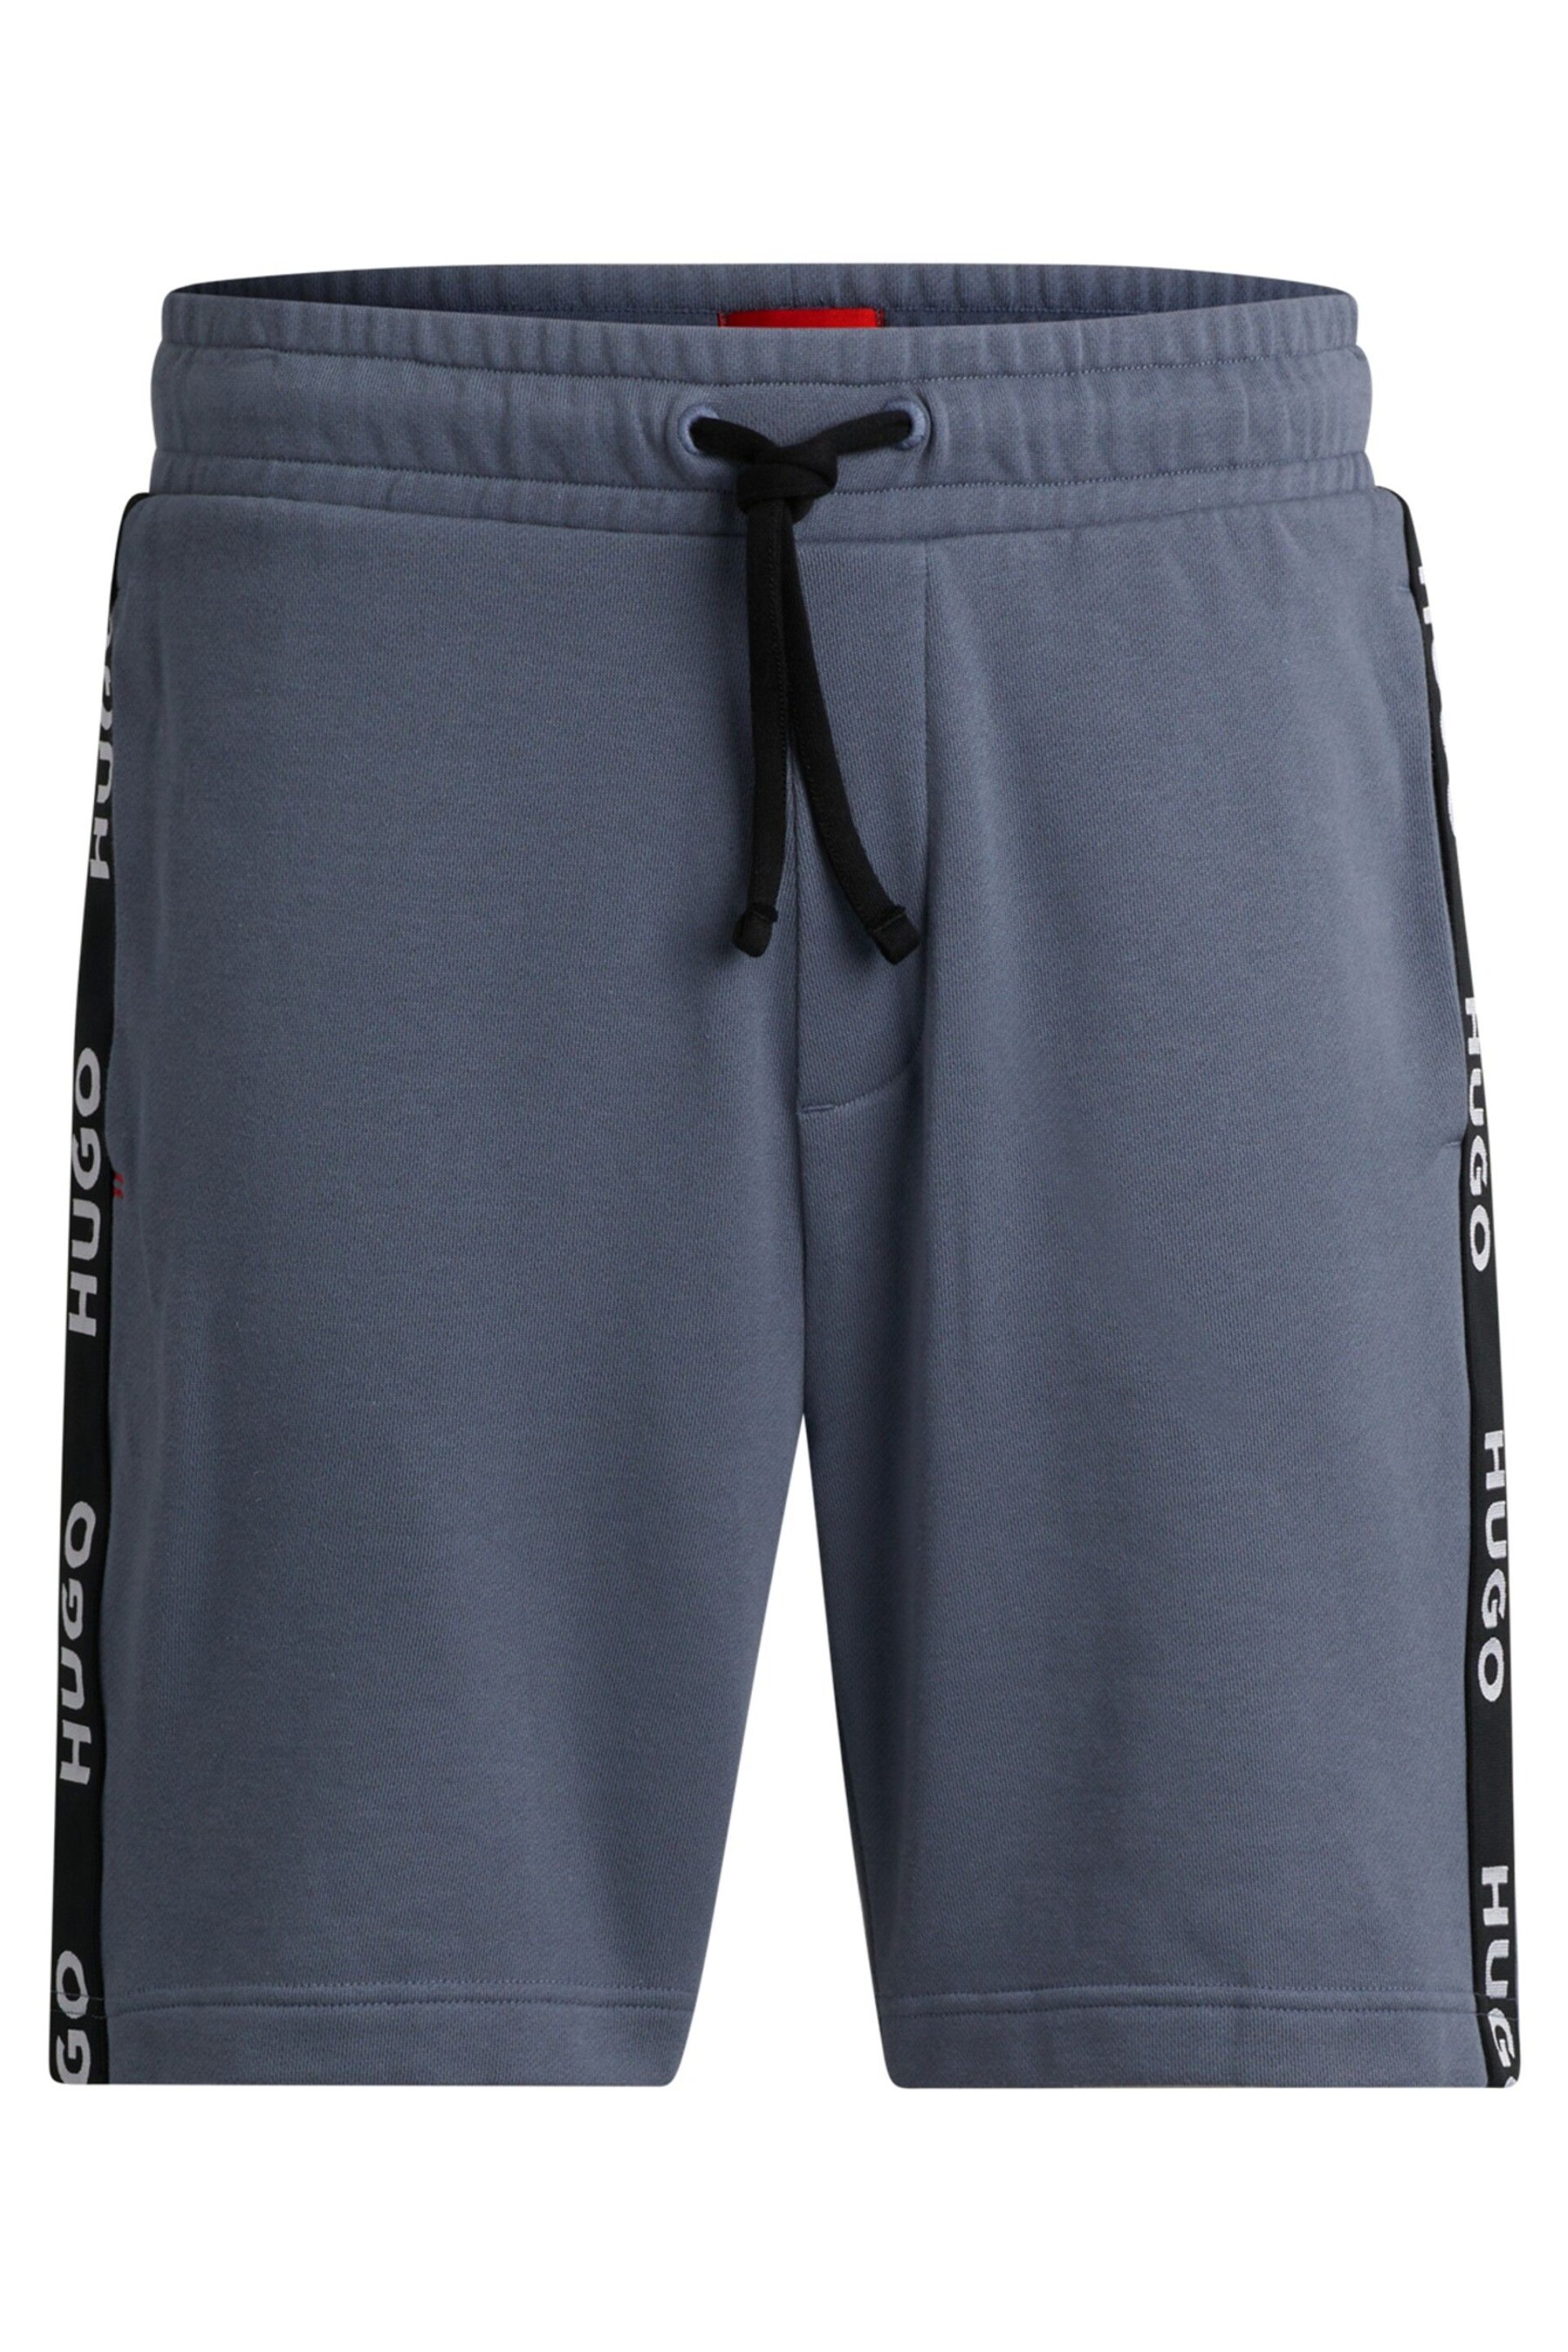 HUGO Tape Logo Jersey Shorts - Image 5 of 5